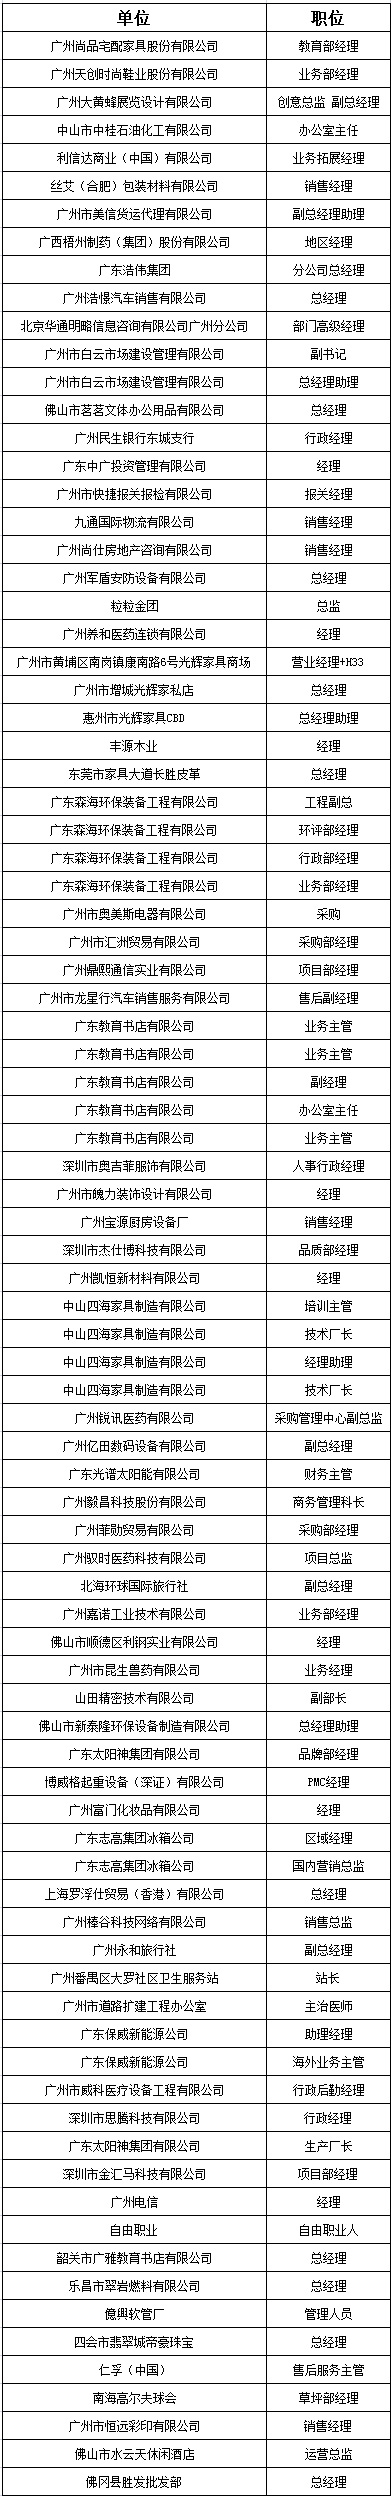 中山大学时代华商教育中心在职经理工商管理高级研修班高级研修班47班学员名录